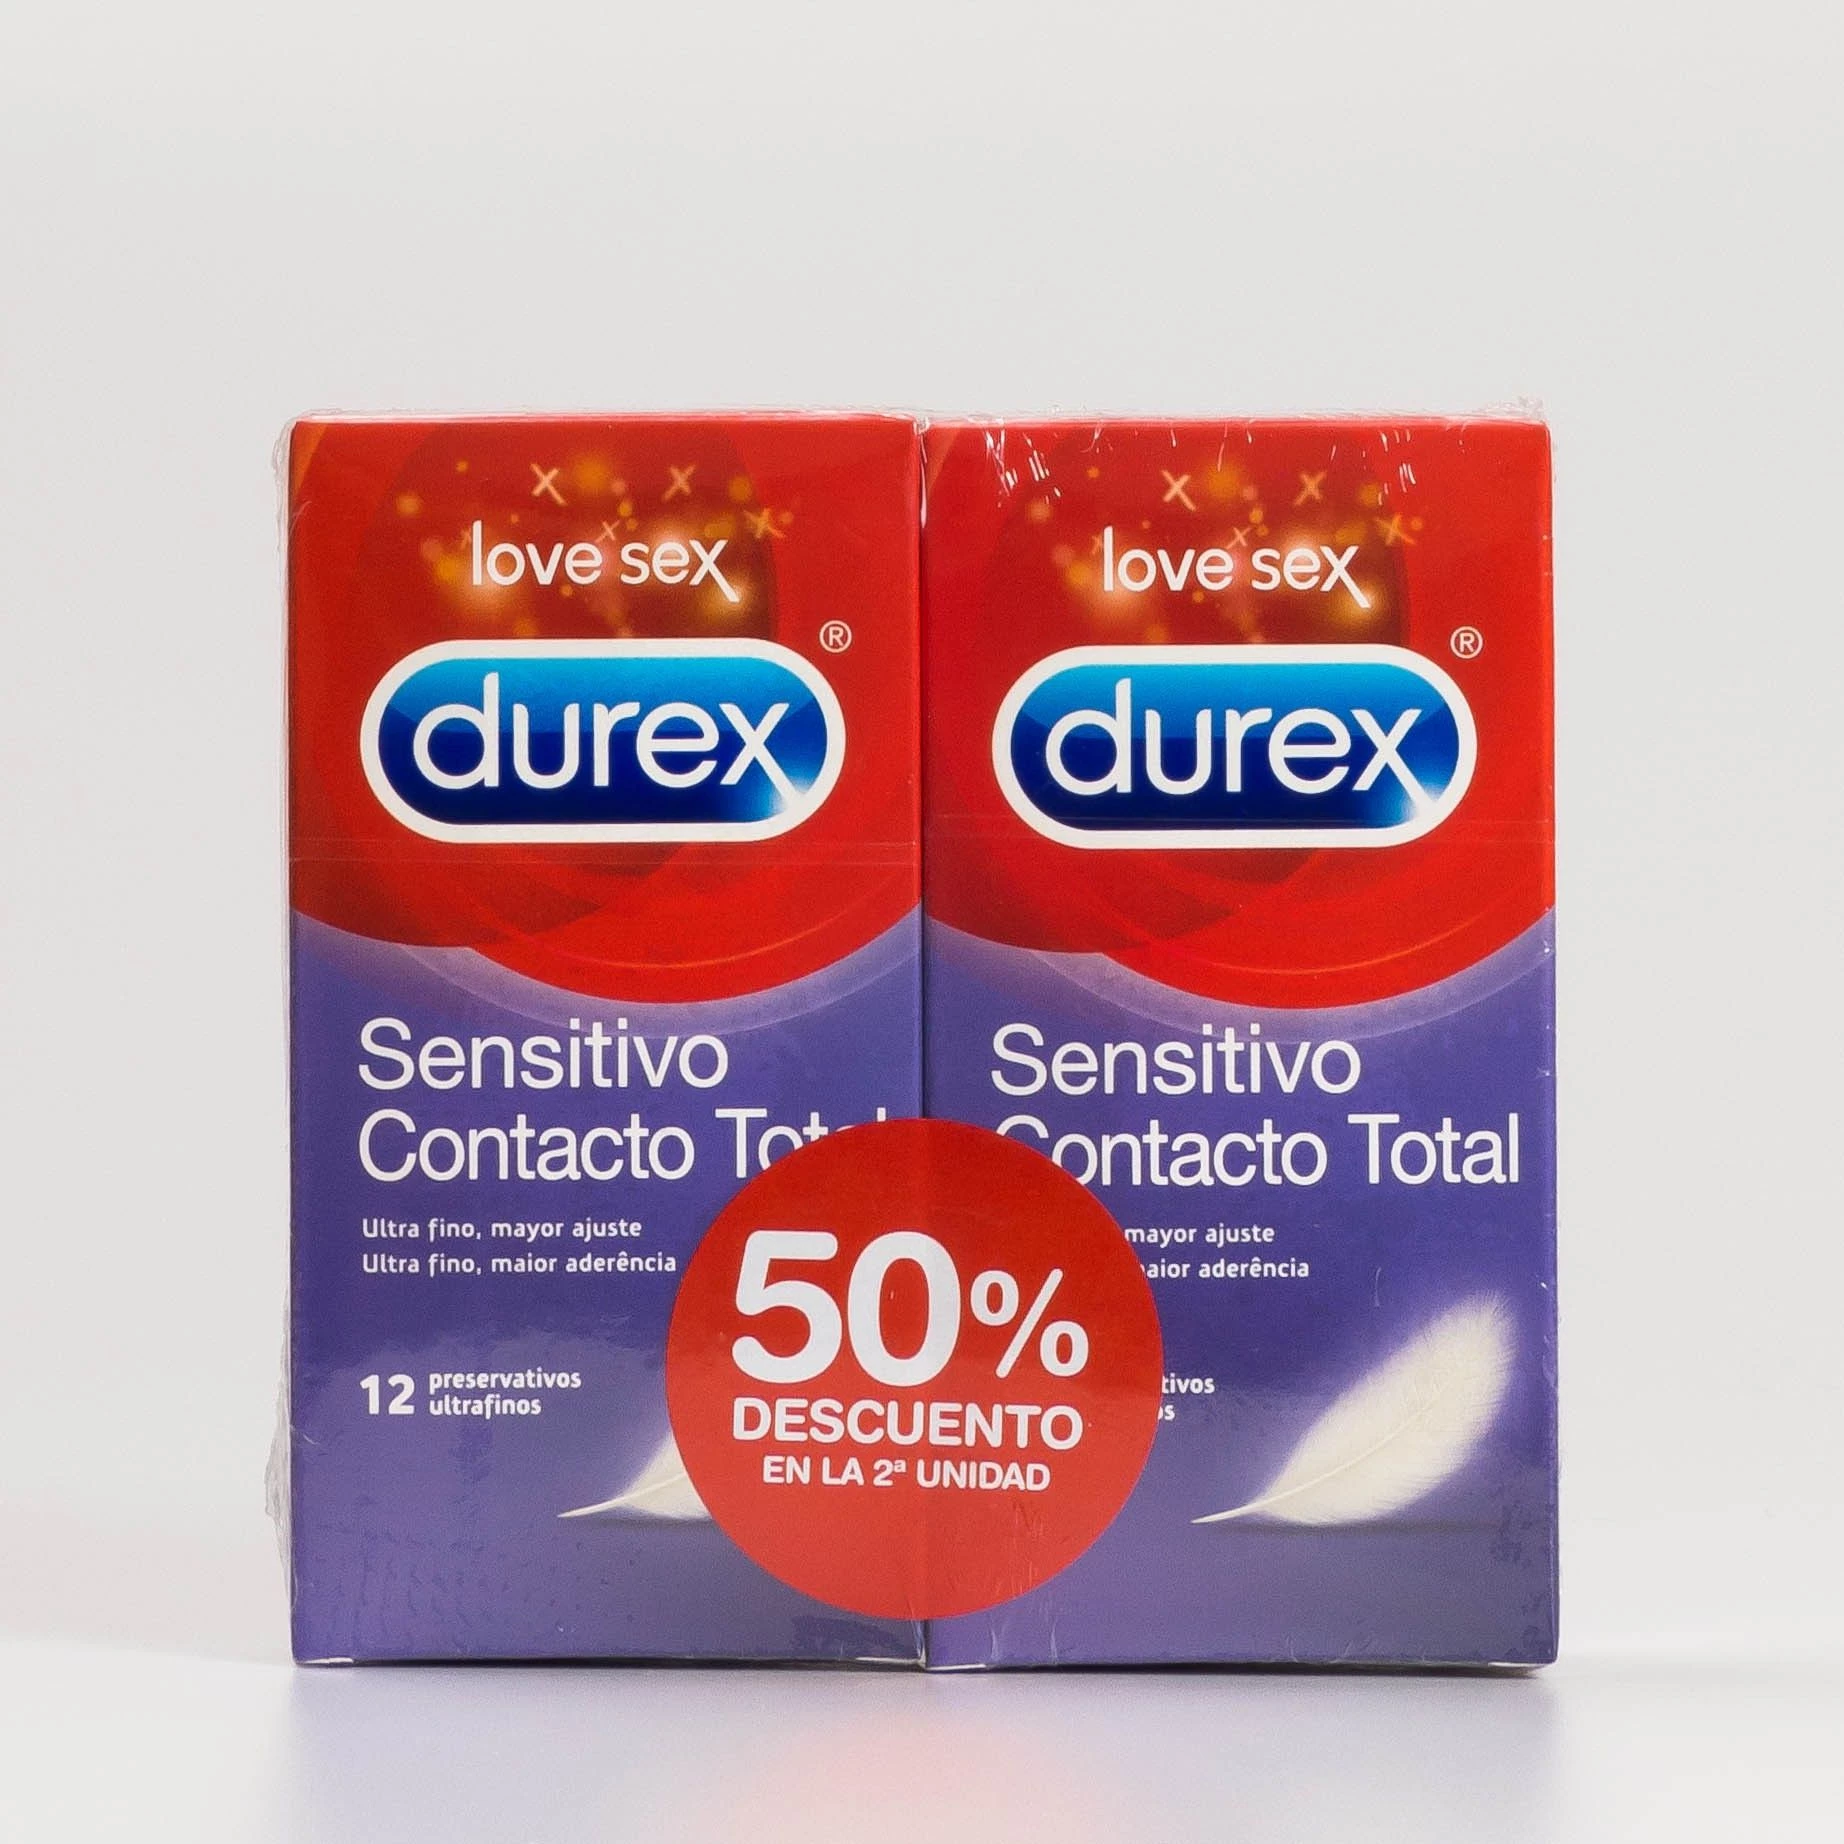 Durex Sensitivo Contacto Total Duplo, 2x12ud